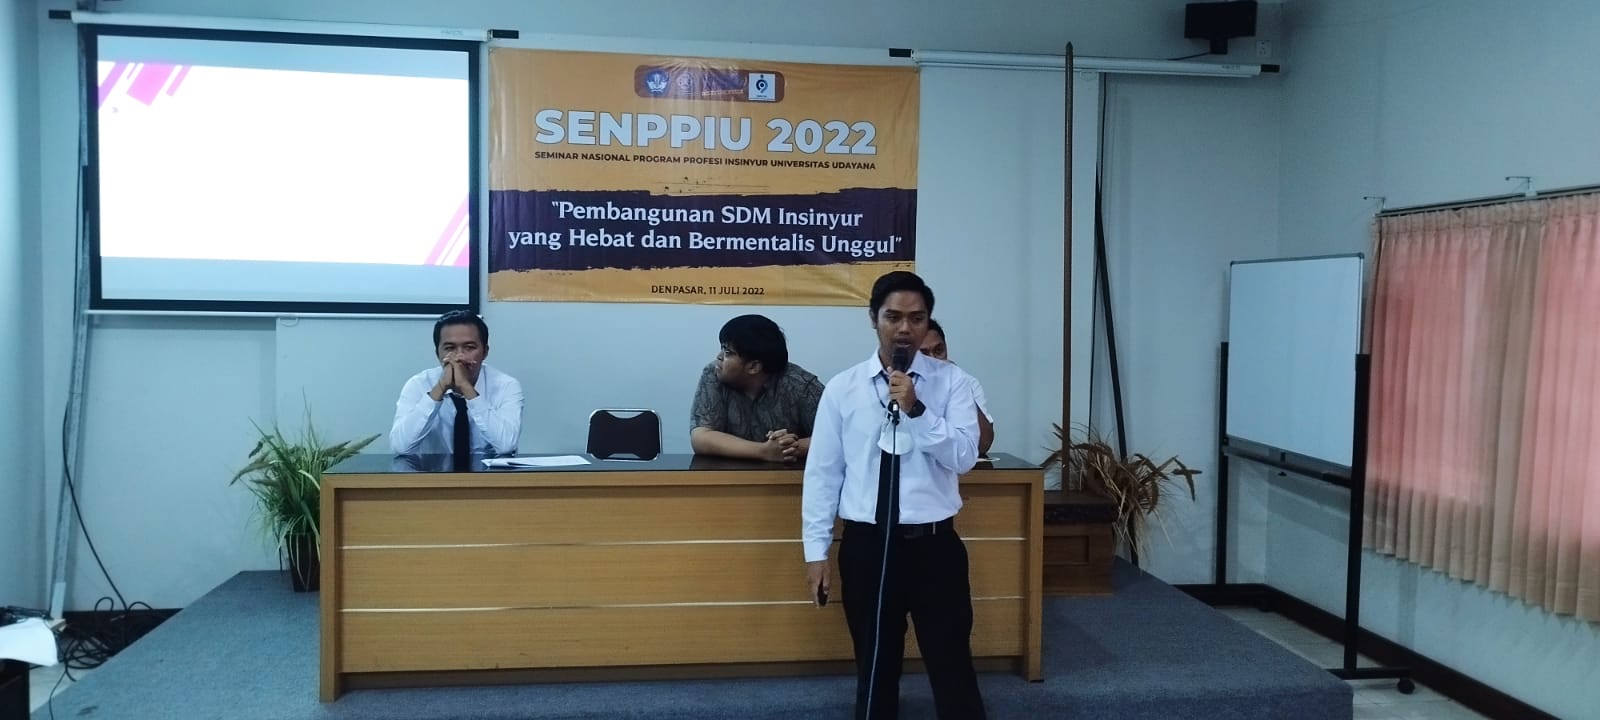 National Seminar on the Postgraduate Engineer Professional Program UNUD – Senppiu 2022